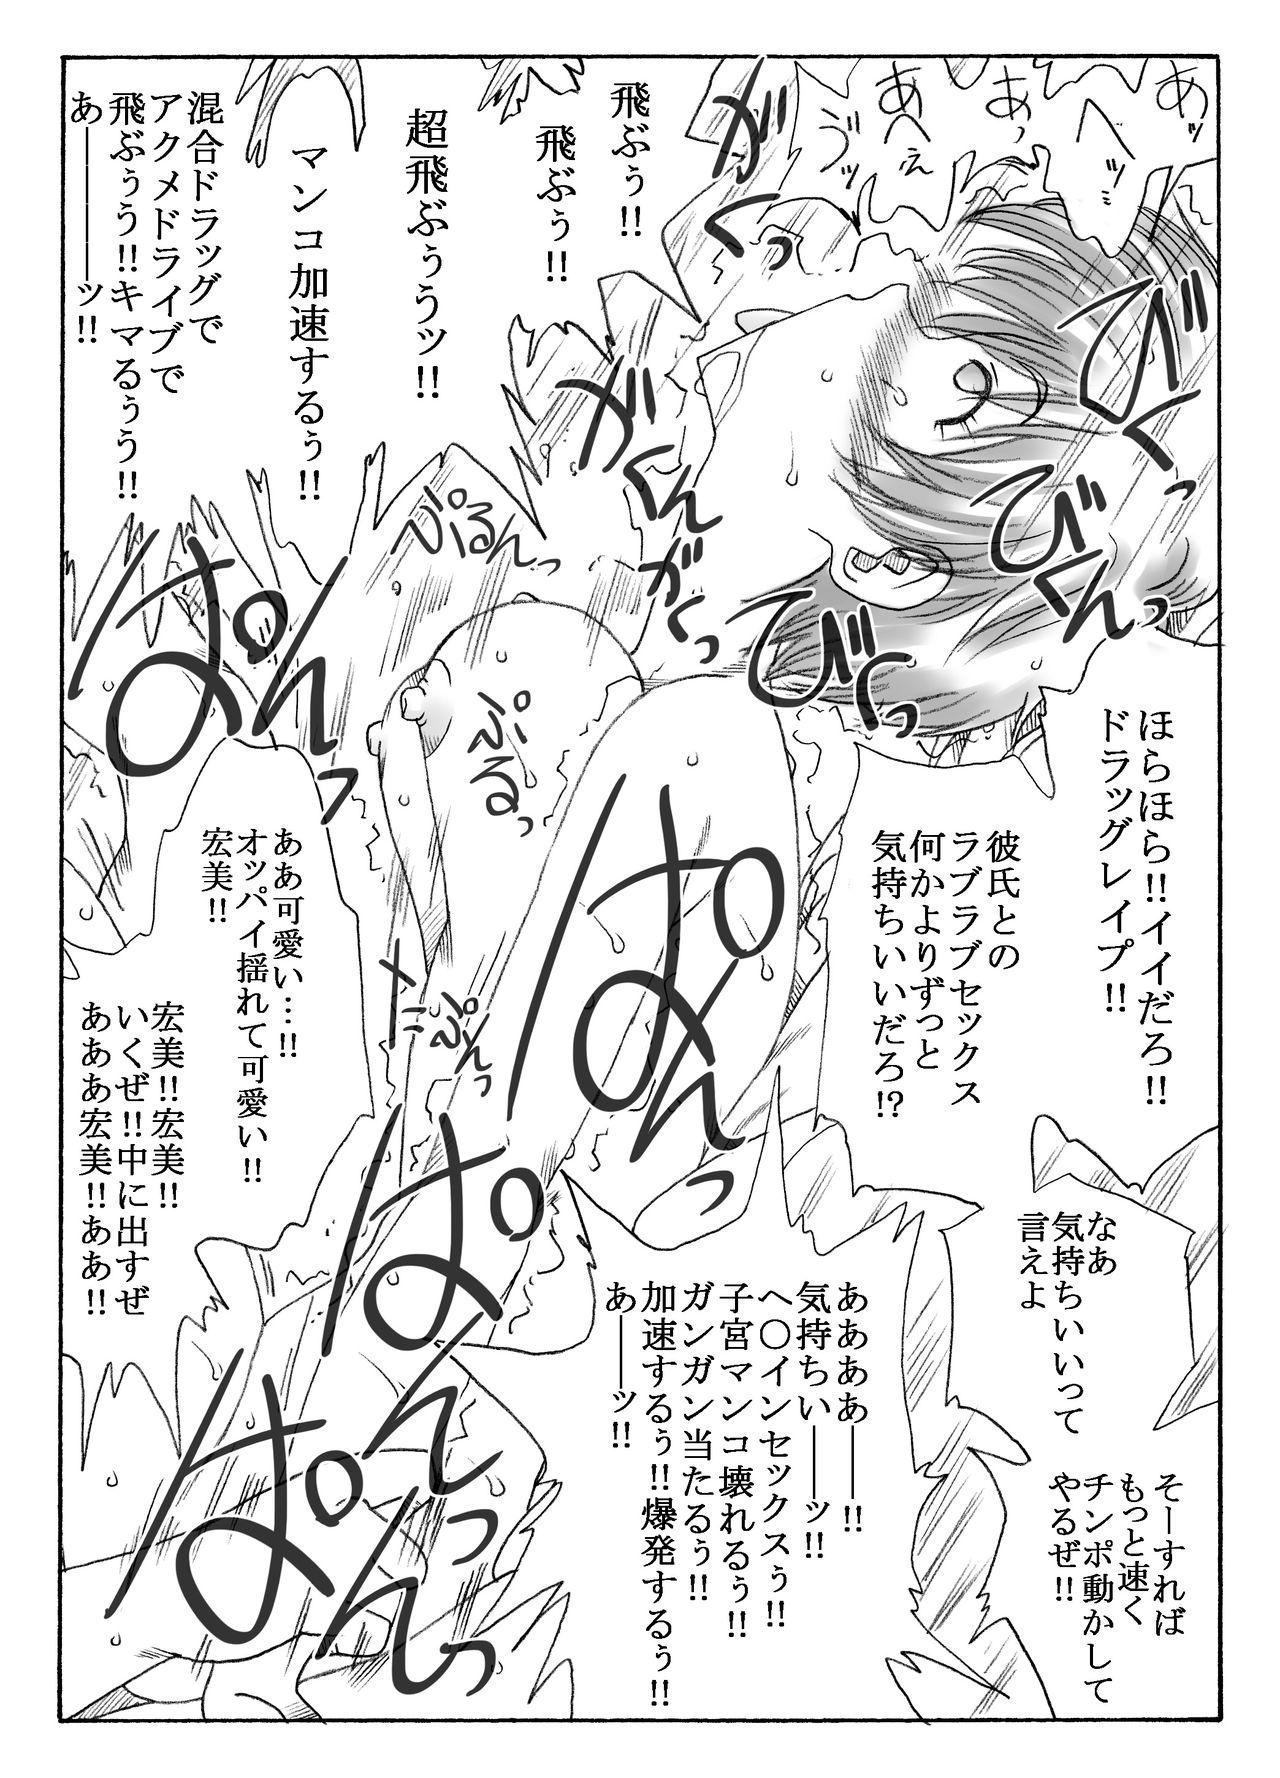 Gemidos kusuridukinisare ryoujyokusareru senseito seitotachi - Original Smooth - Page 5